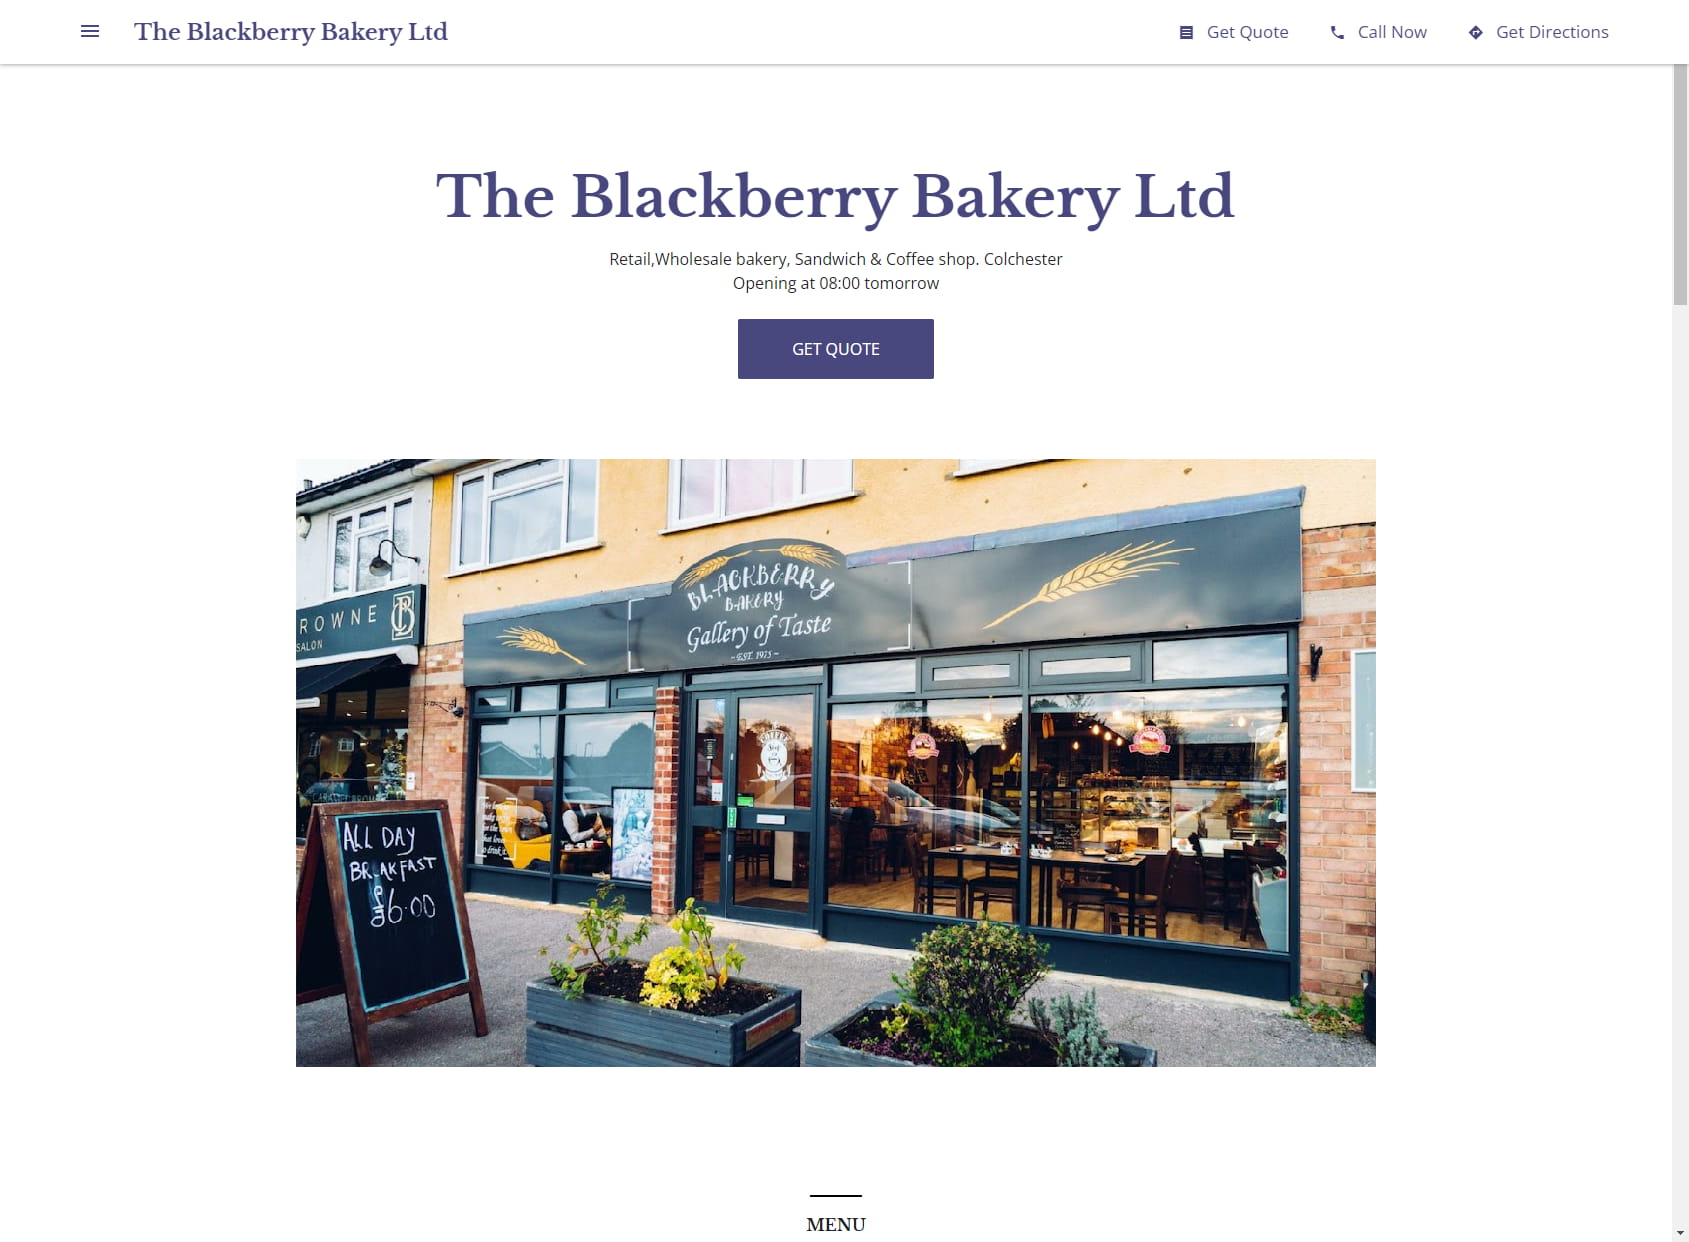 The Blackberry Bakery Ltd